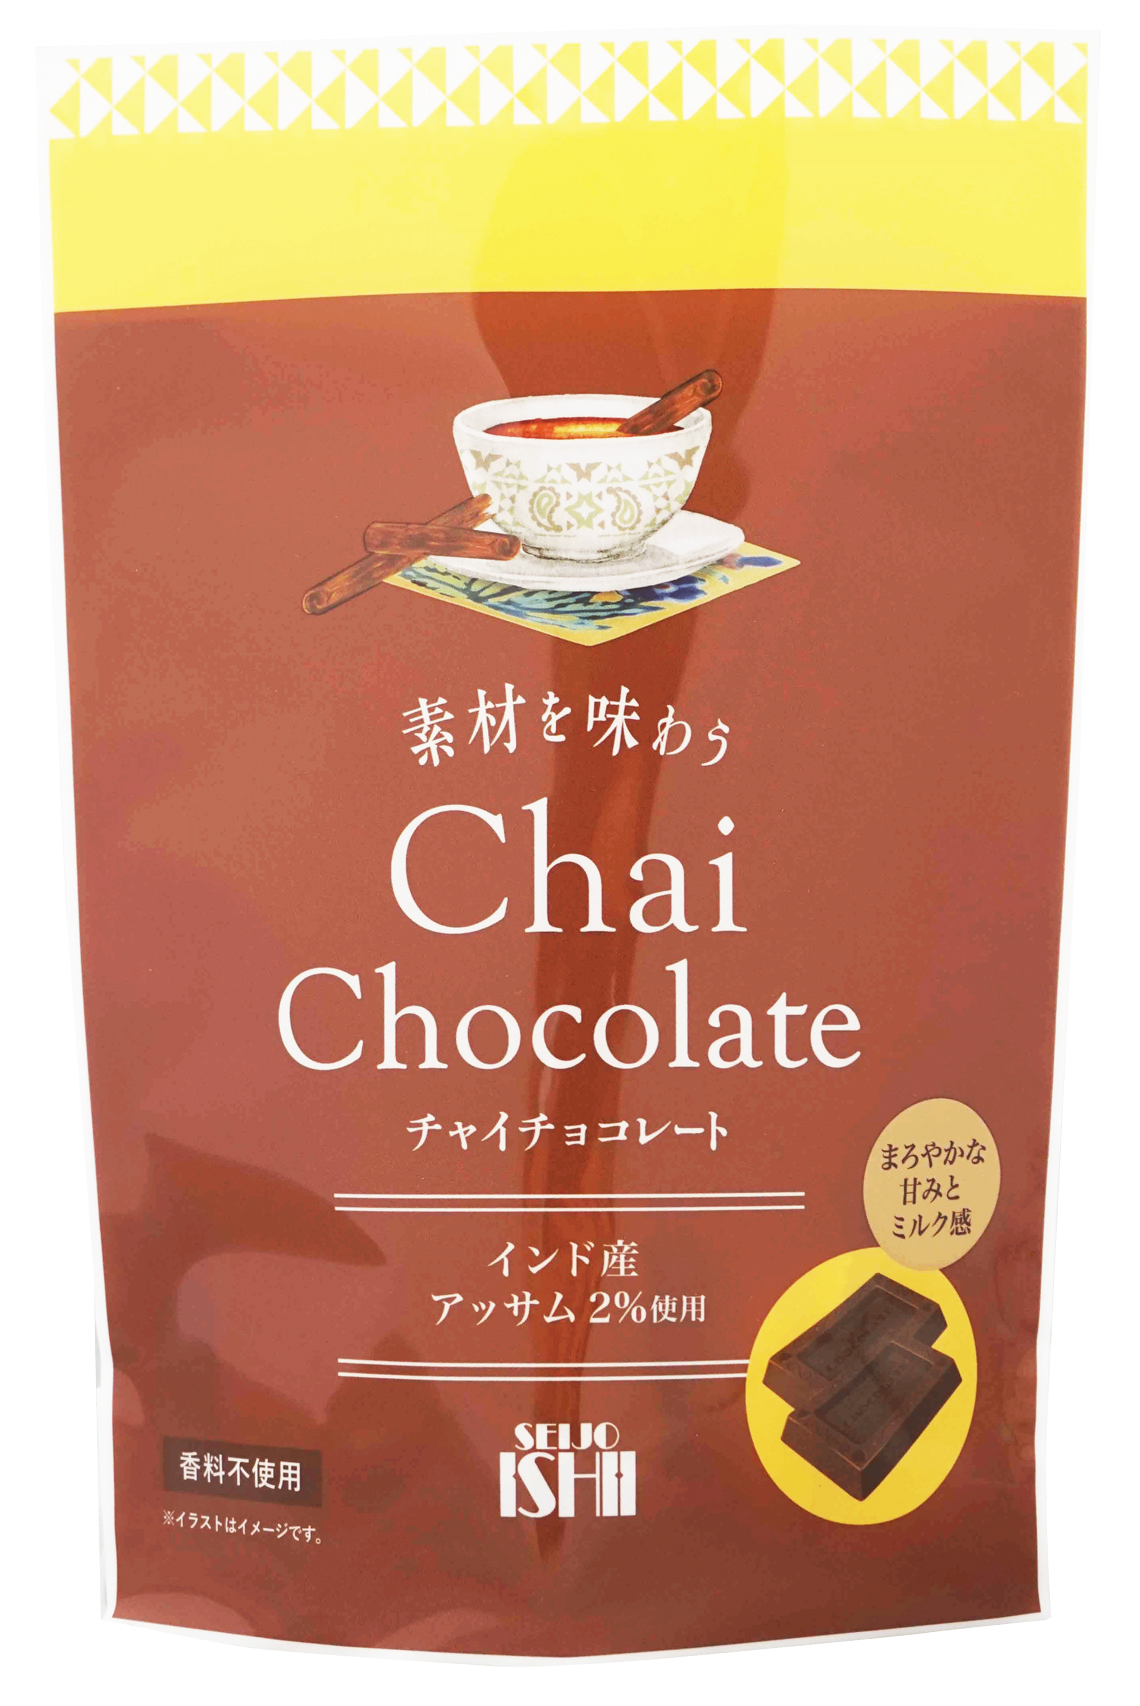 新発売チョコレートとペアリングのご紹介 成城石井公式ブログ 成城石井 Top Buyer Blog